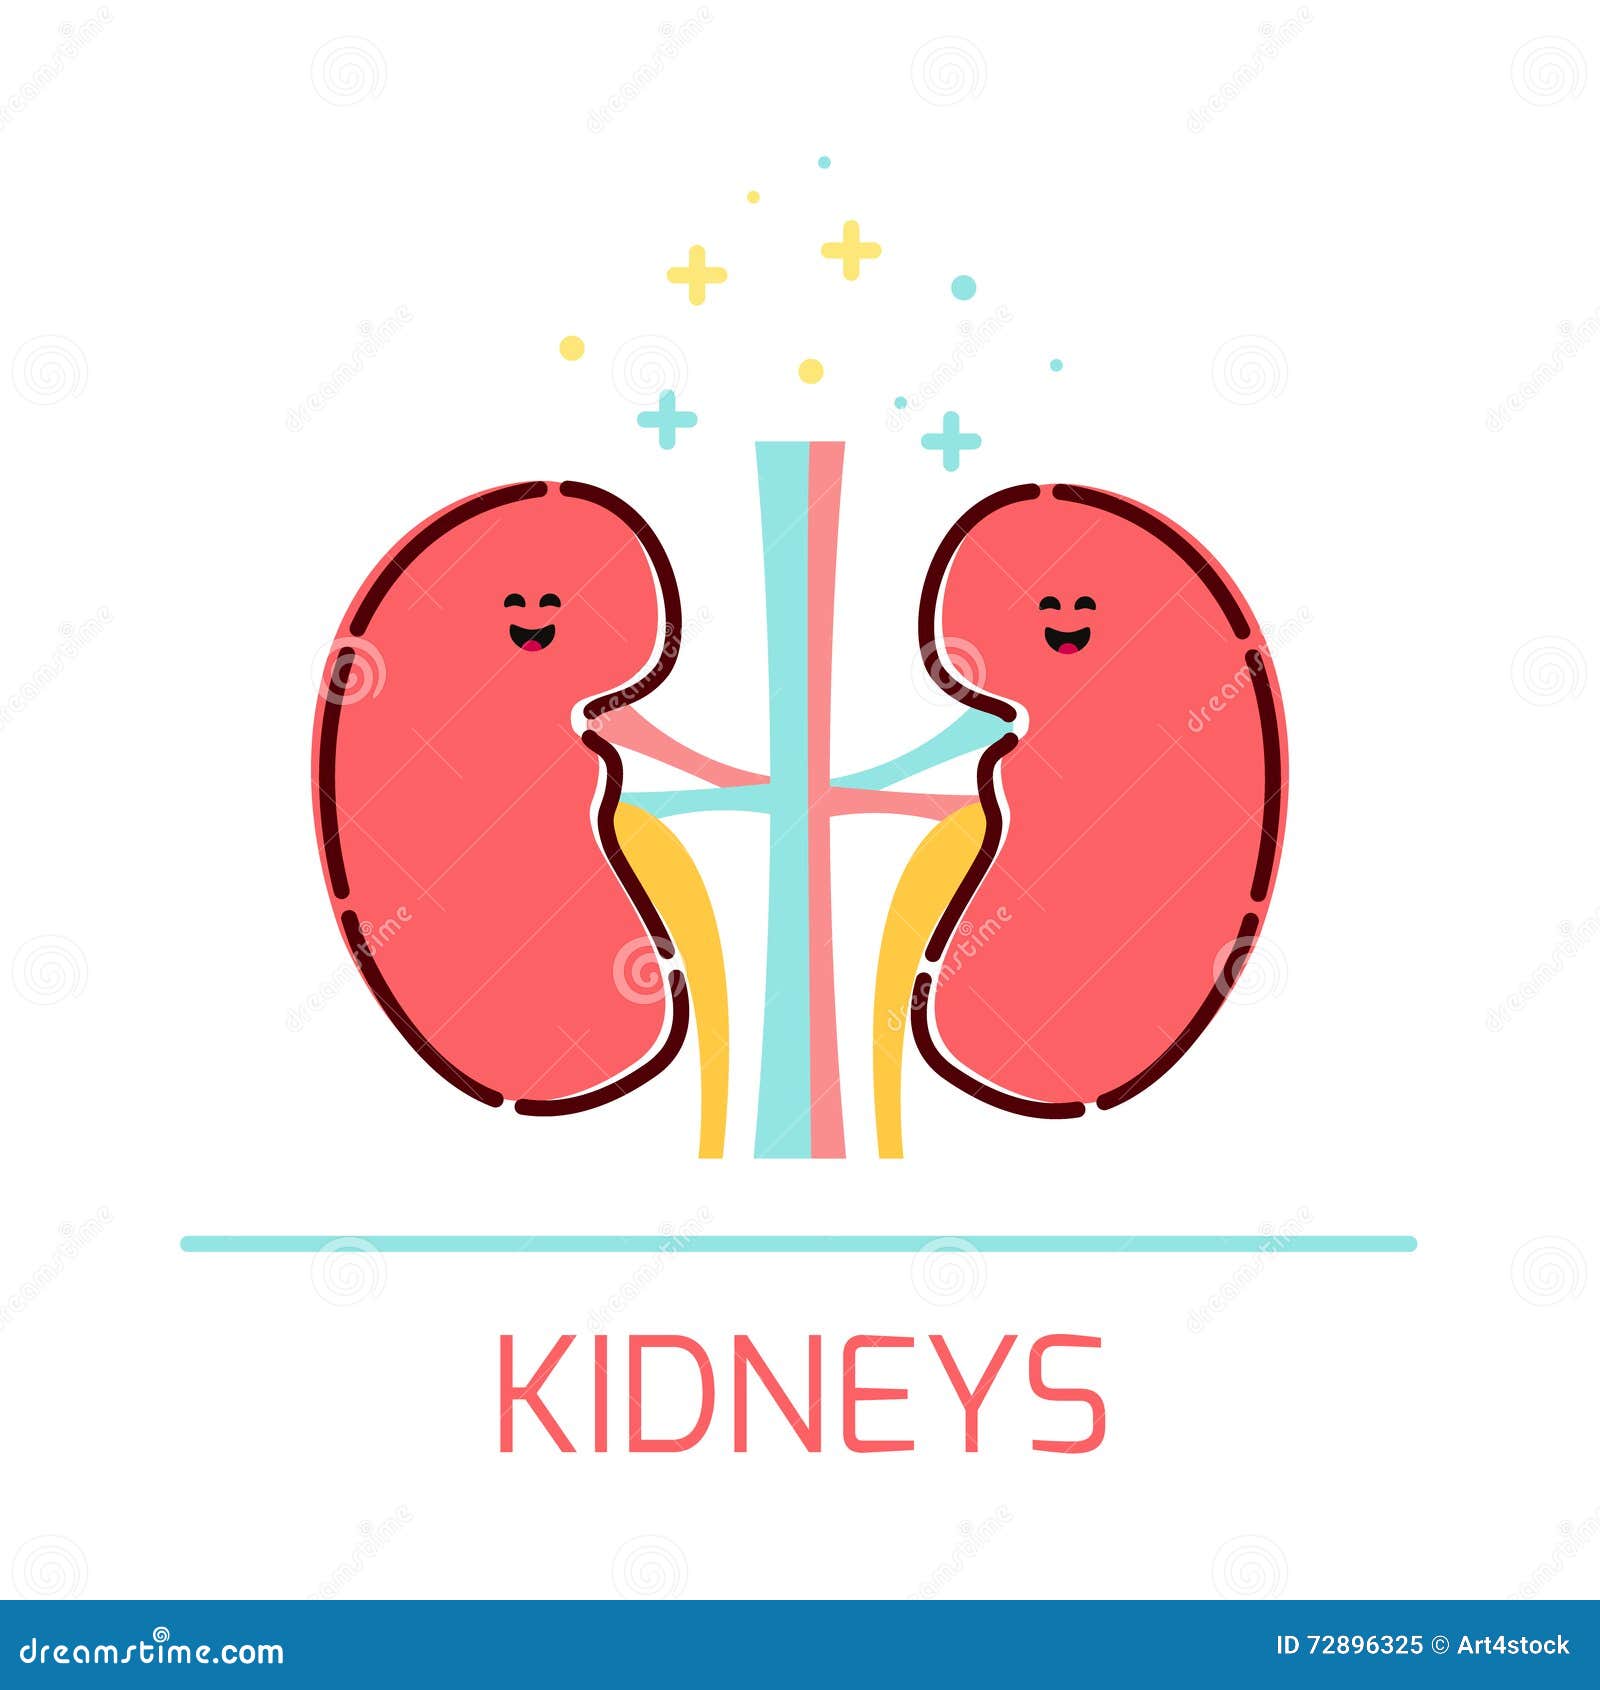 Kidney cartoon icon stock illustration. Illustration of design - 72896325